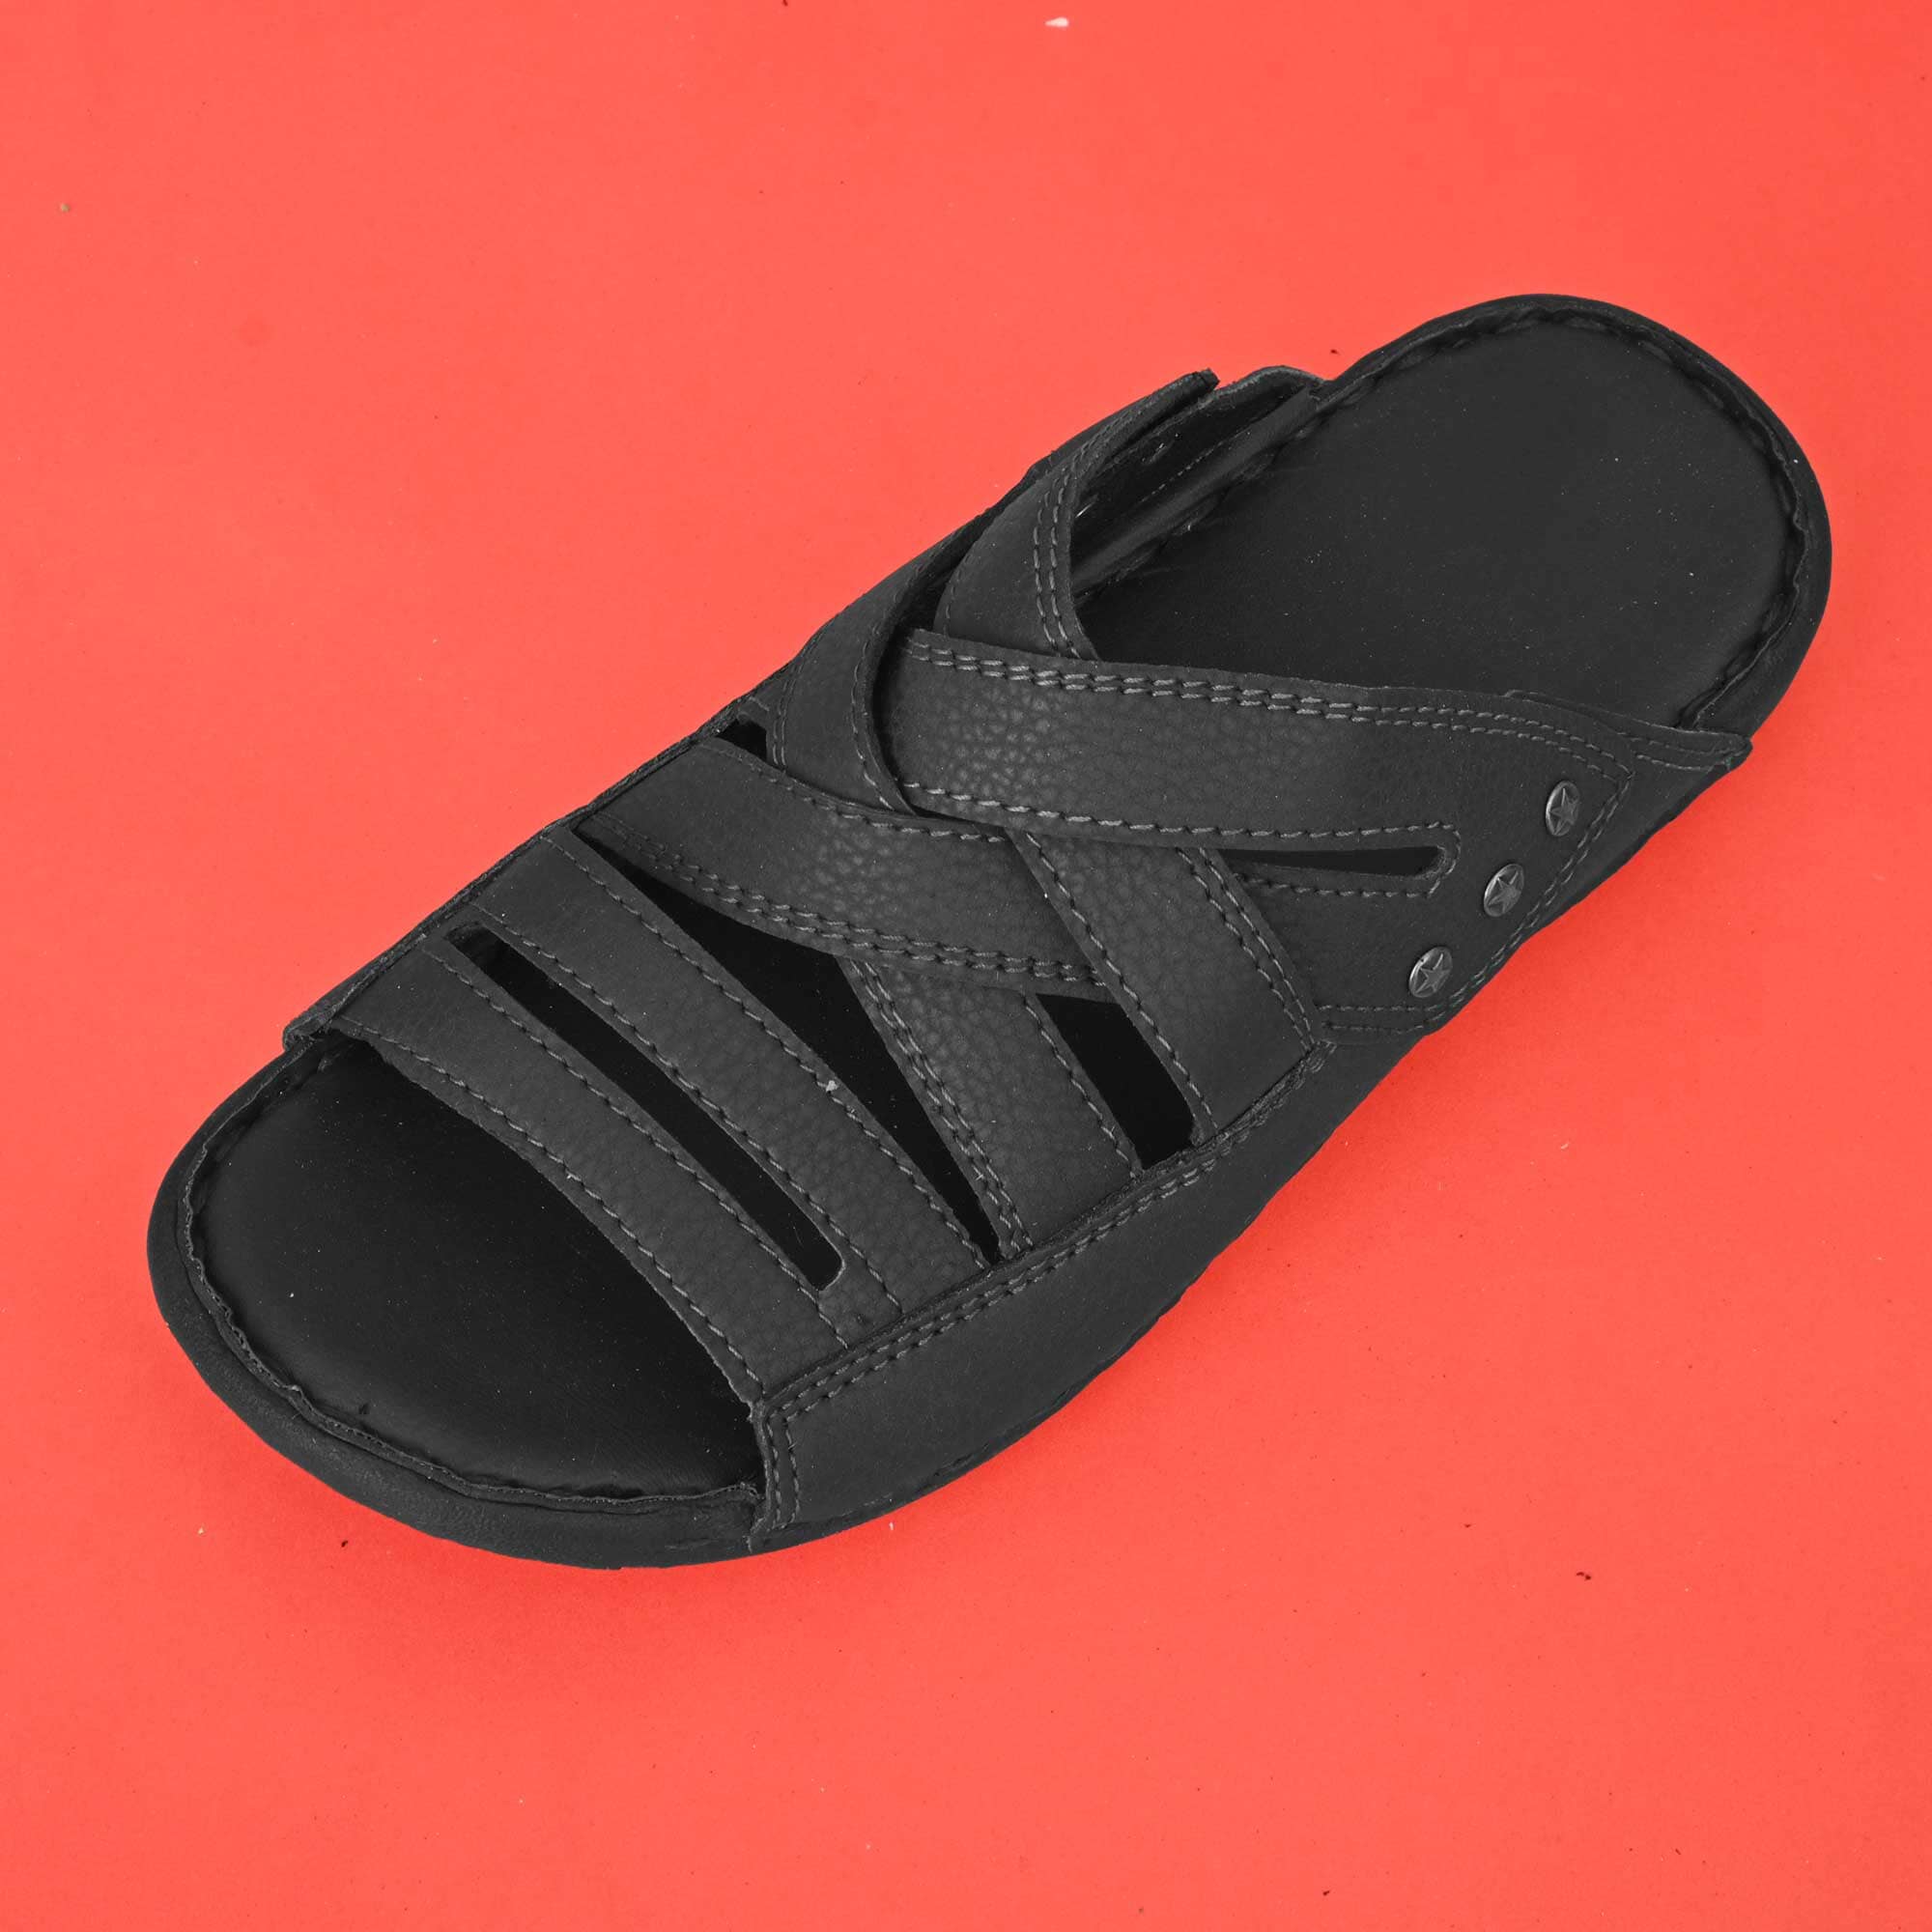 People Sandals 9 Black Lennon Chiller Black Slip On Beach Strap New BNIB |  eBay